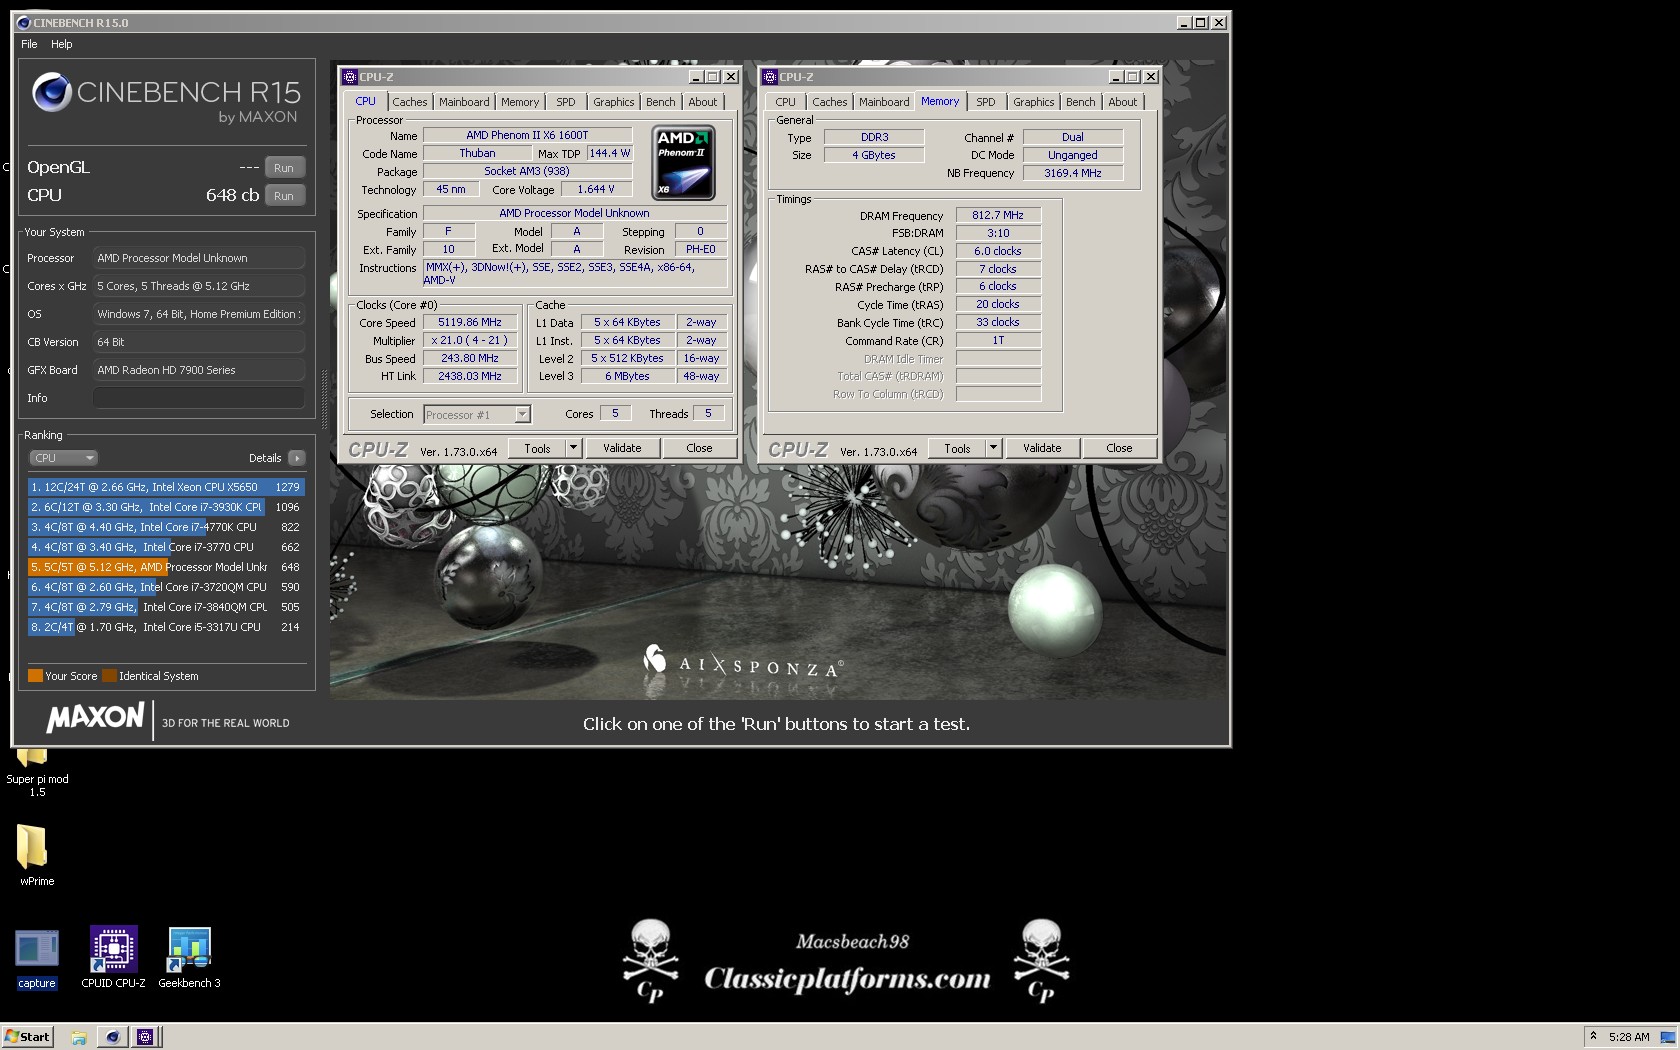 macsbeach98`s Cinebench - R15 score: 648 cb with a Phenom II X4 960T BE